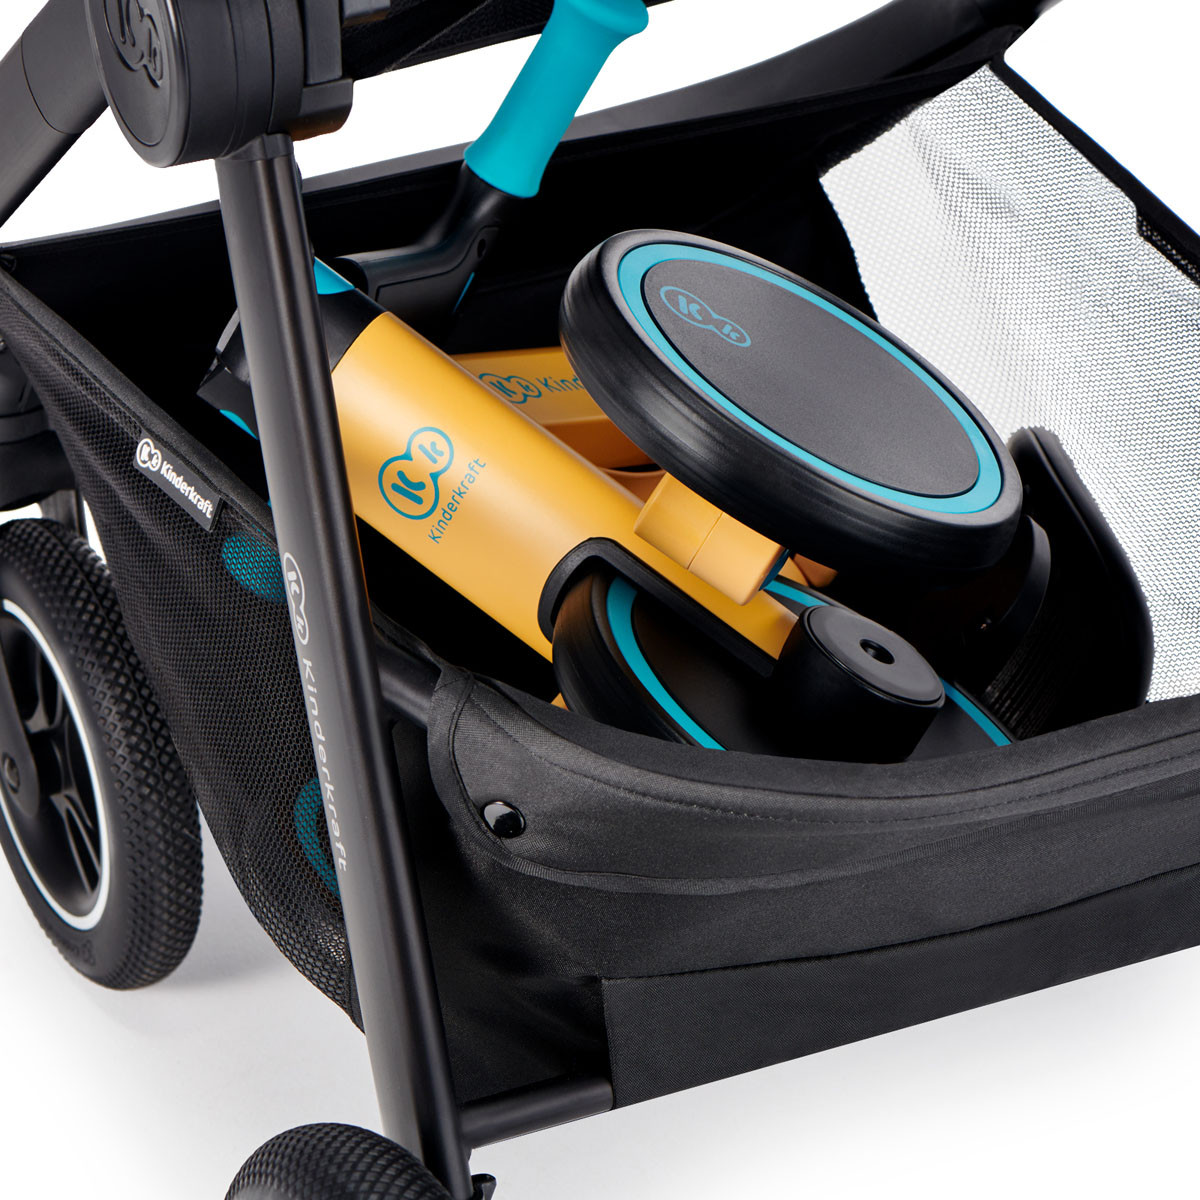 Triciclo 4TRIKE 3 en 1 de Kinderkraft, cabrá en un maletero e incluso en la cesta de tu carrito durante el paseo.